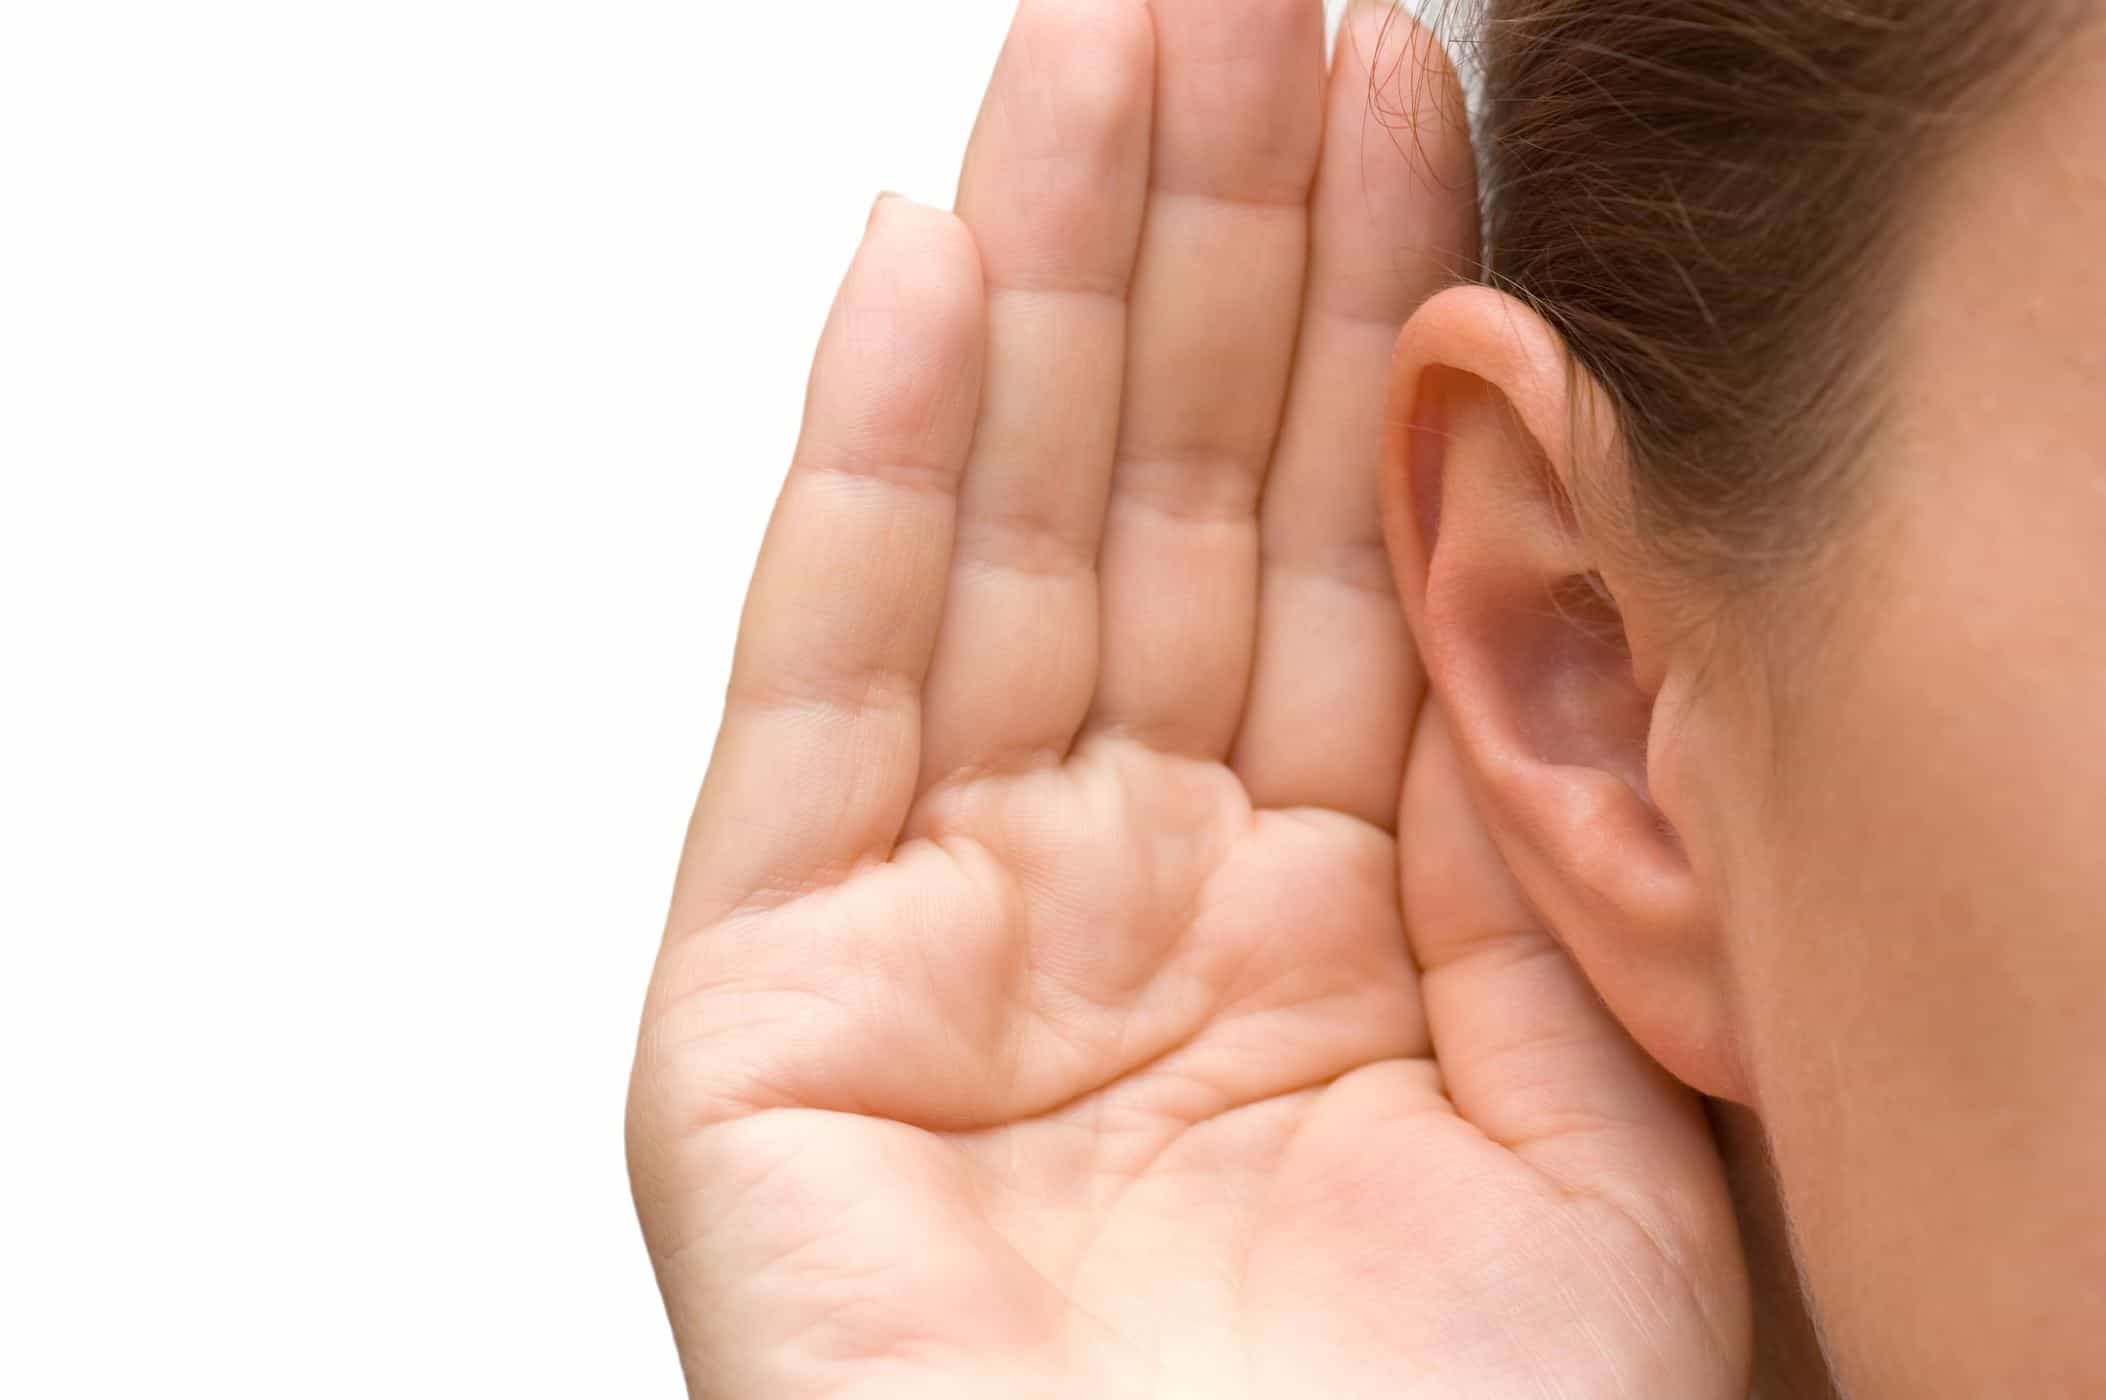 La sordità può essere completamente curata? Questo è quello che dicono gli esperti nelle ultime ricerche